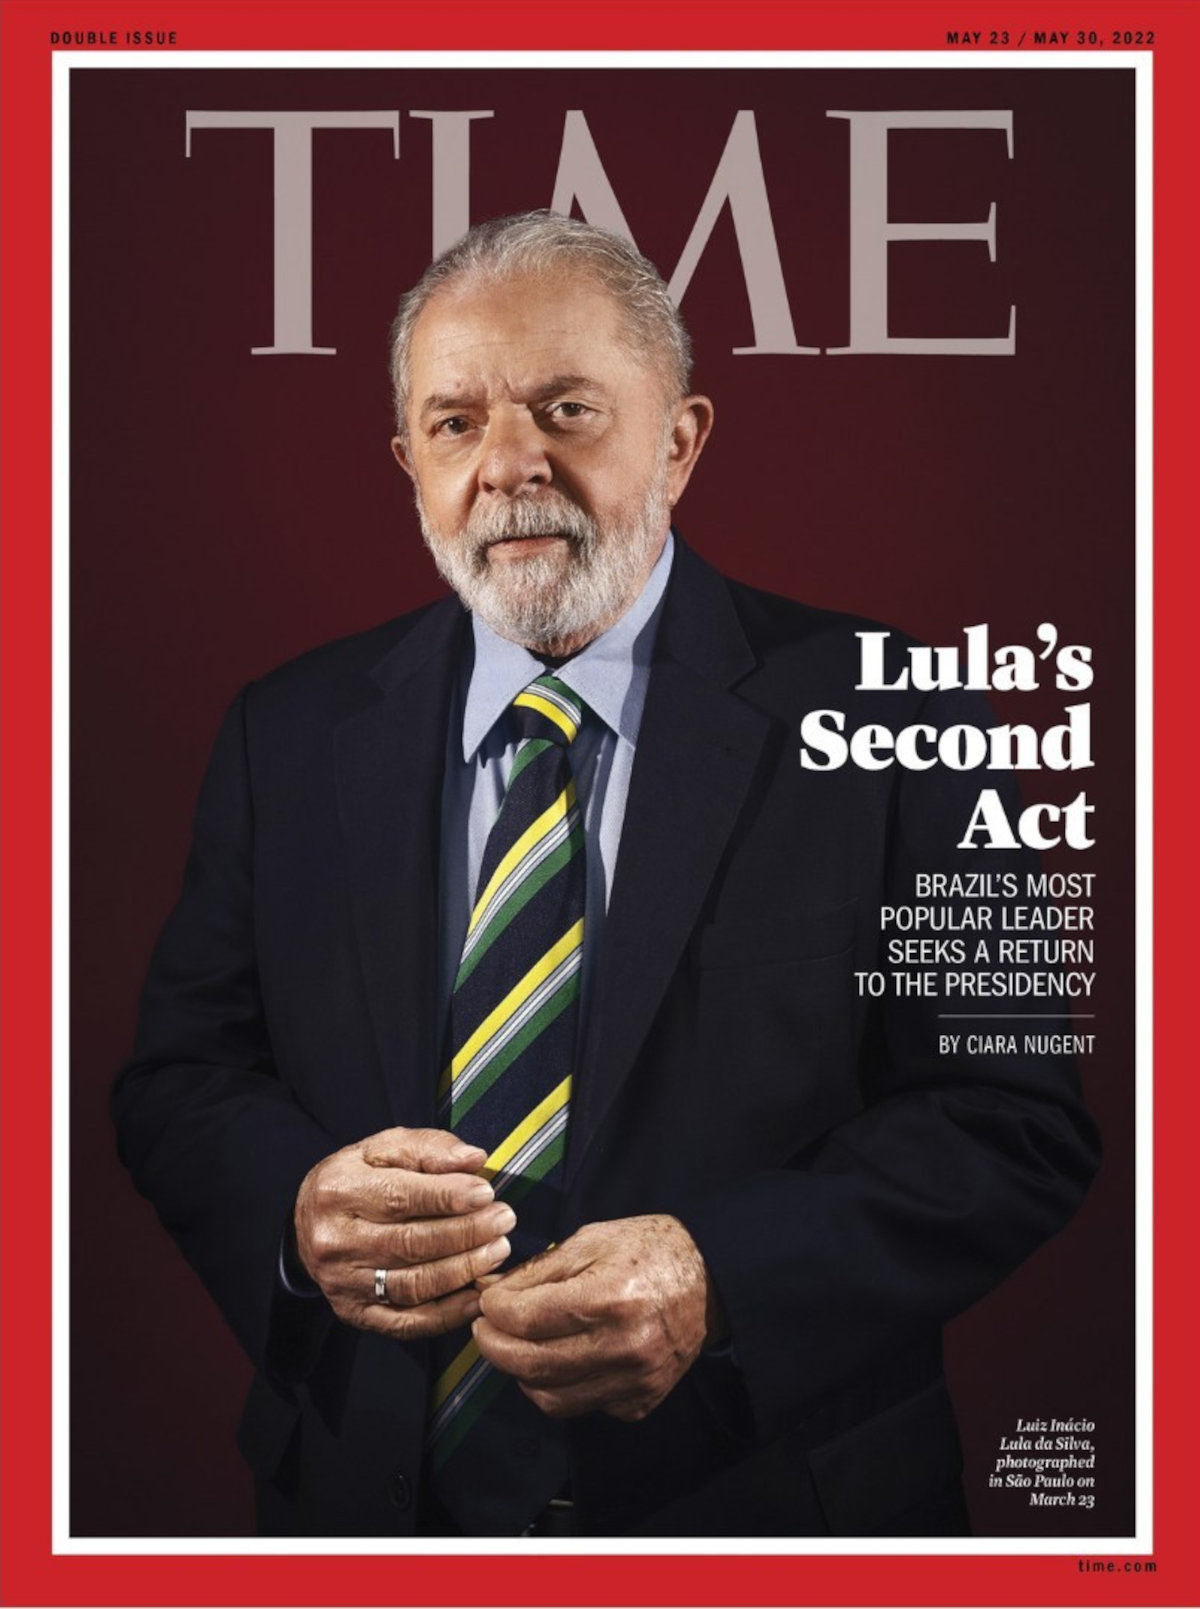 Gravada do Lula - capa da revista Time